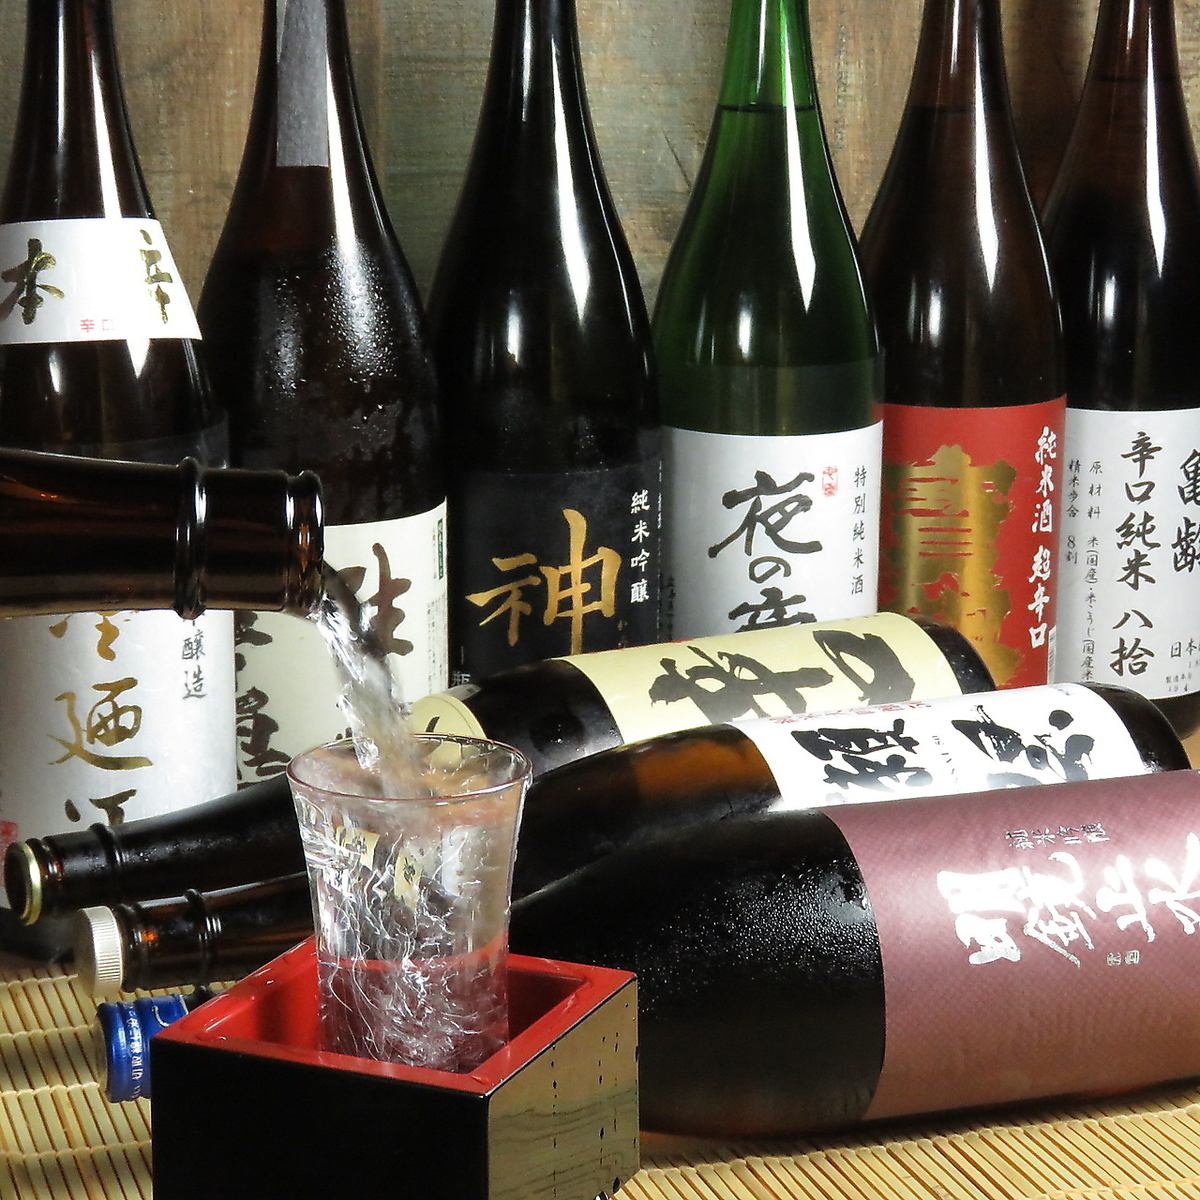 以海鲜闻名的横川居酒屋木原，与朋友、同事一起享受吧♪